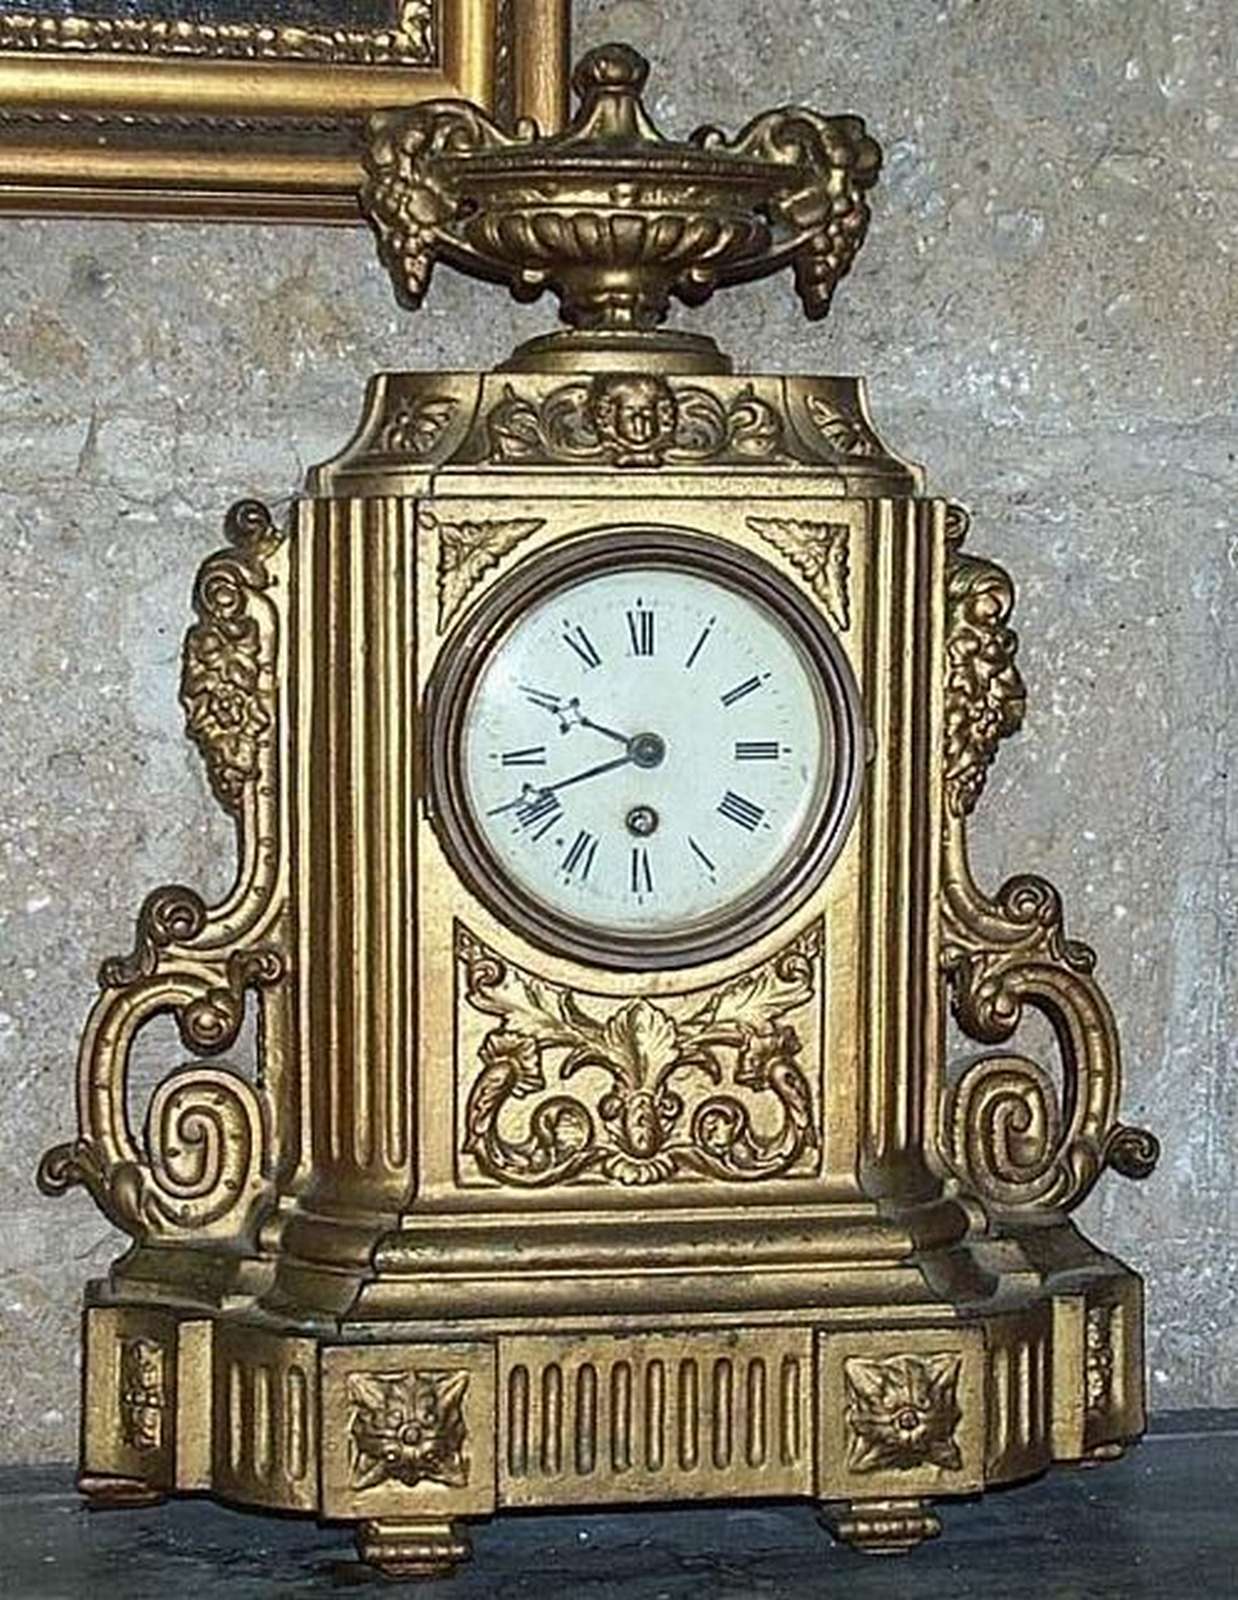 Antico orologio in antimonio. Epoca inizi 1900. - 1